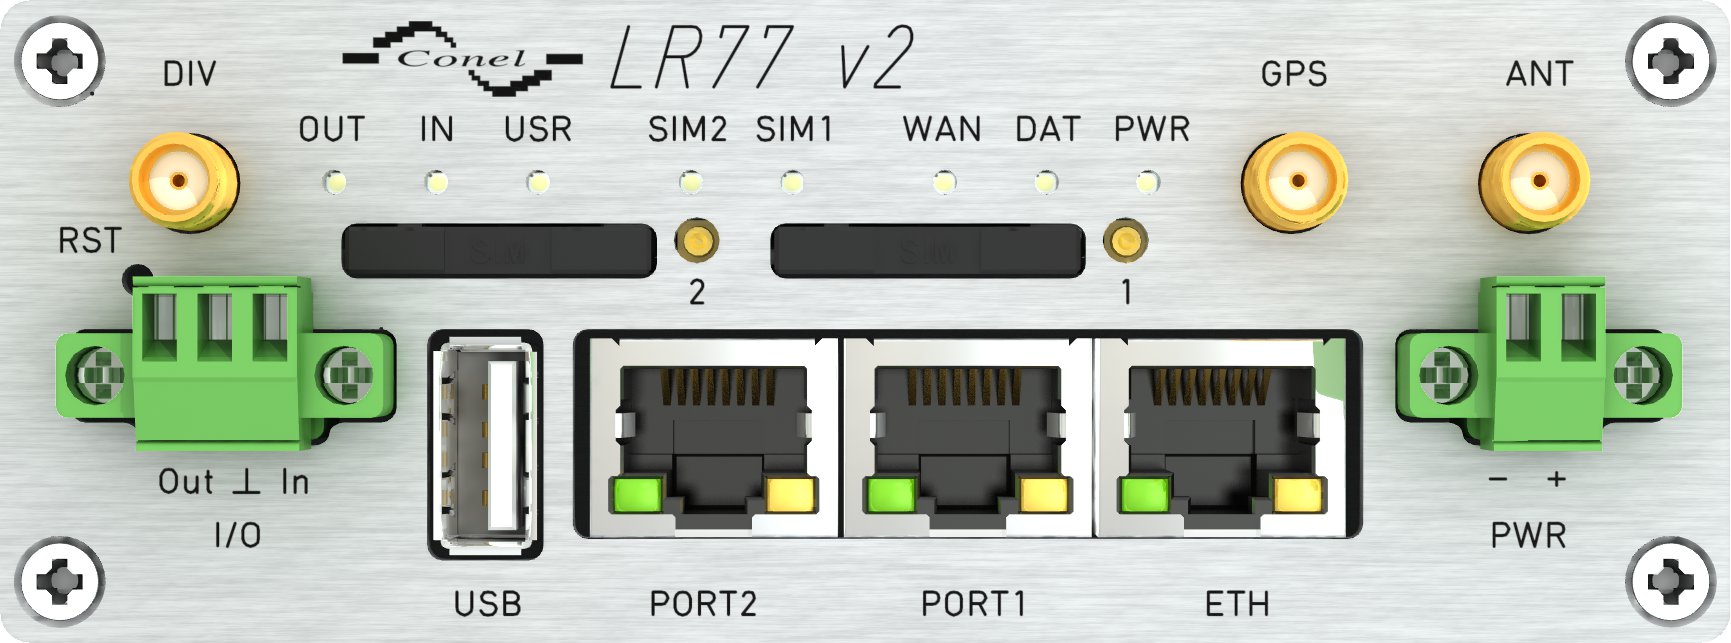 5. Provedení routeru 5.1 Verze routerů Router LR77 v2 je dodáván v níže uvedených variantách. Všechny varianty lze dodat v plastové nebo kovové krabičce dle přání zákazníka.